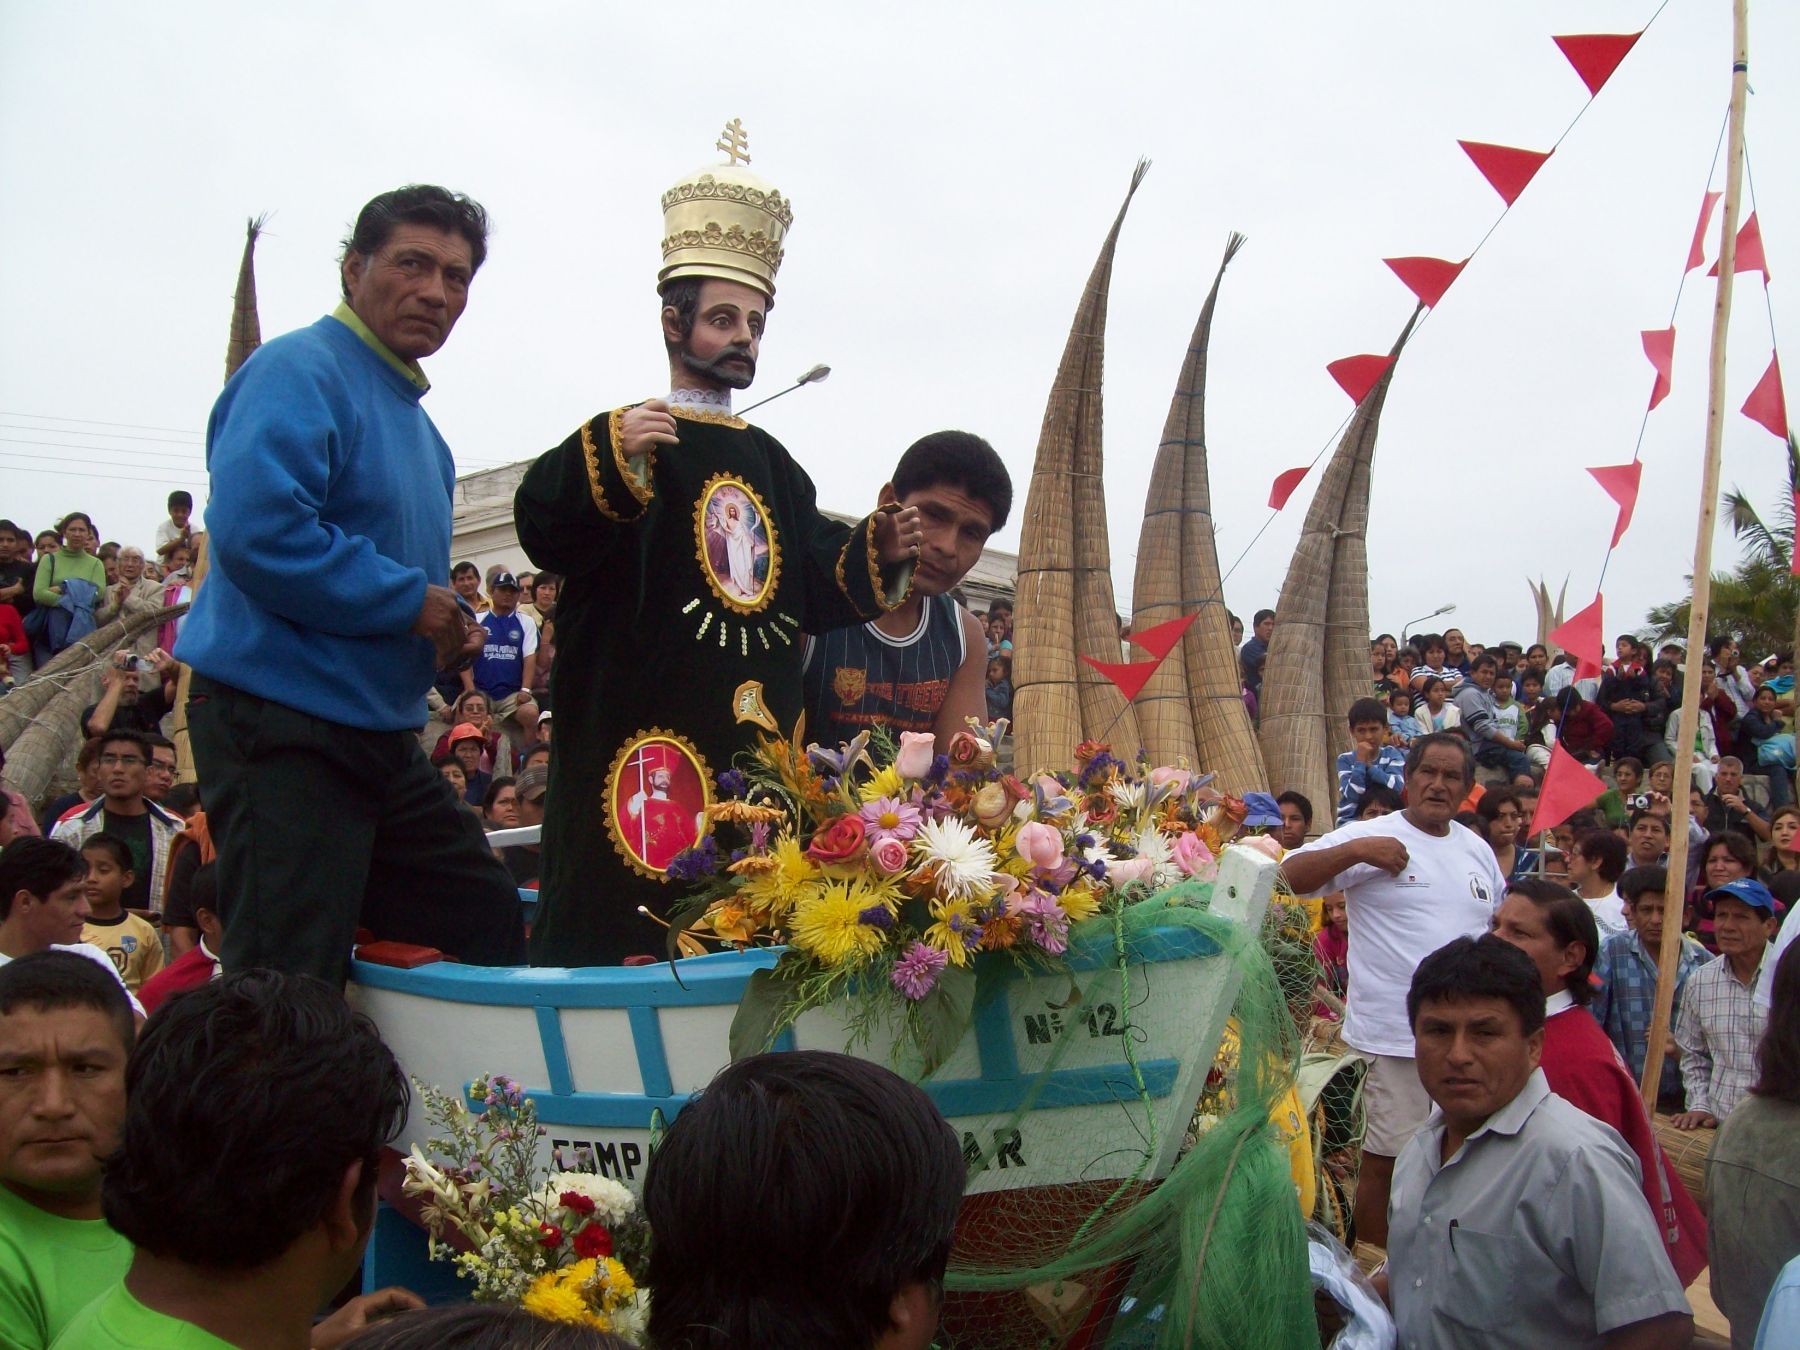 Festividad de San Pedro en balneario de Huanchaco. Foto: Oscar Paz.